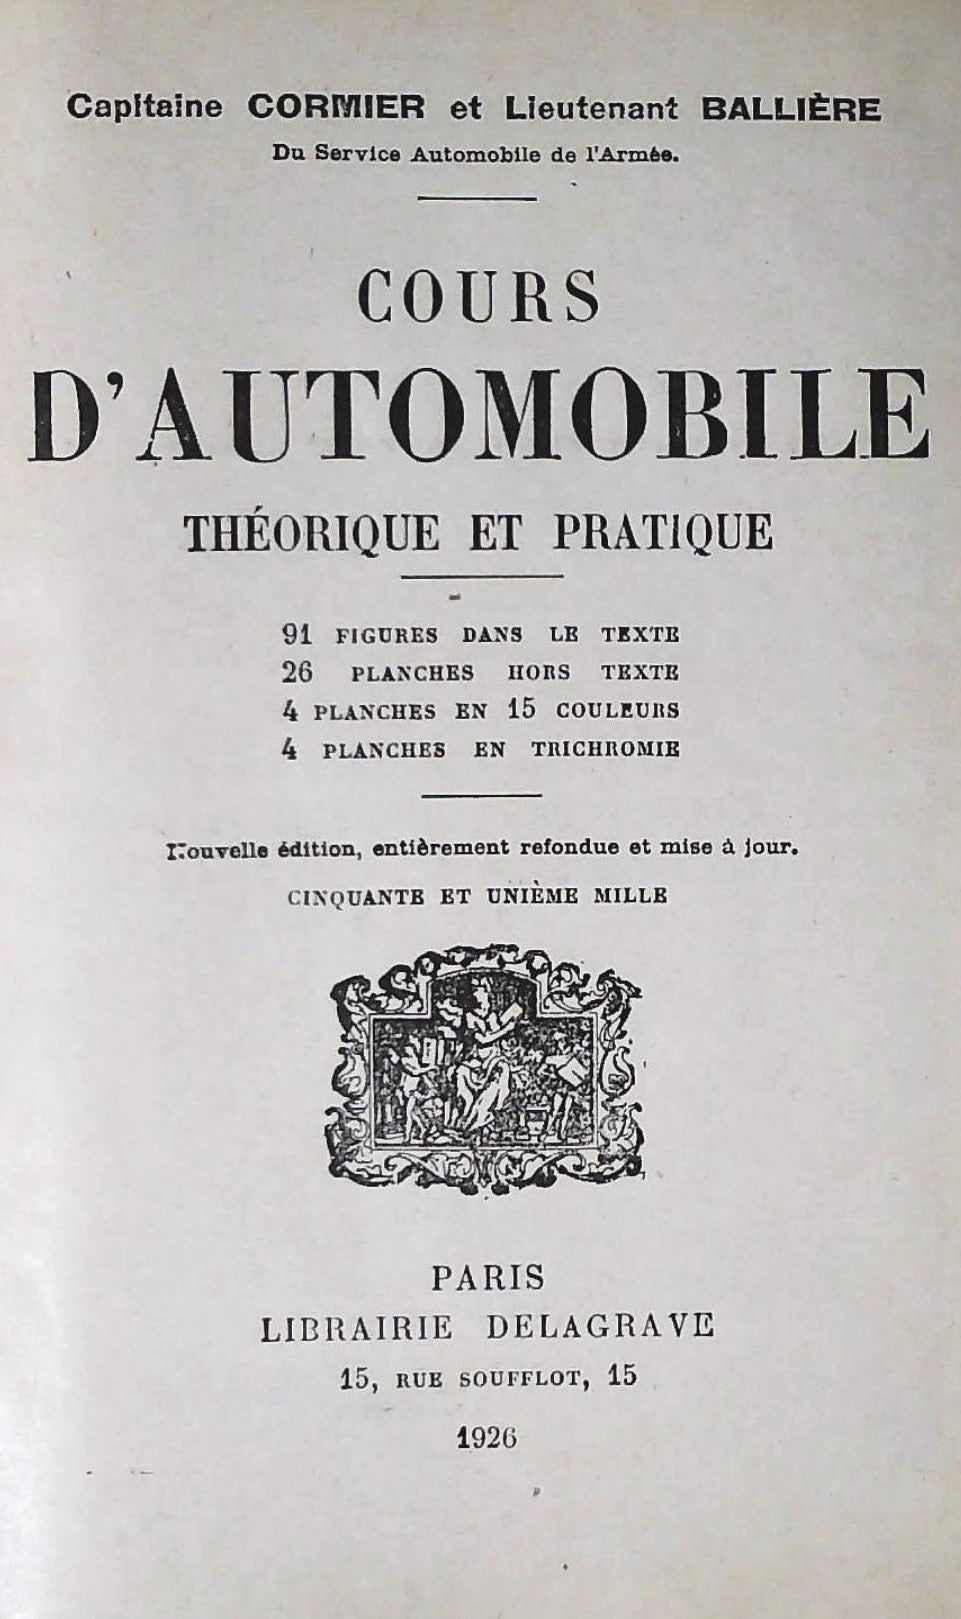 Cours d'automobile: Théorique et pratique (1926) (Capitaine Cormier)